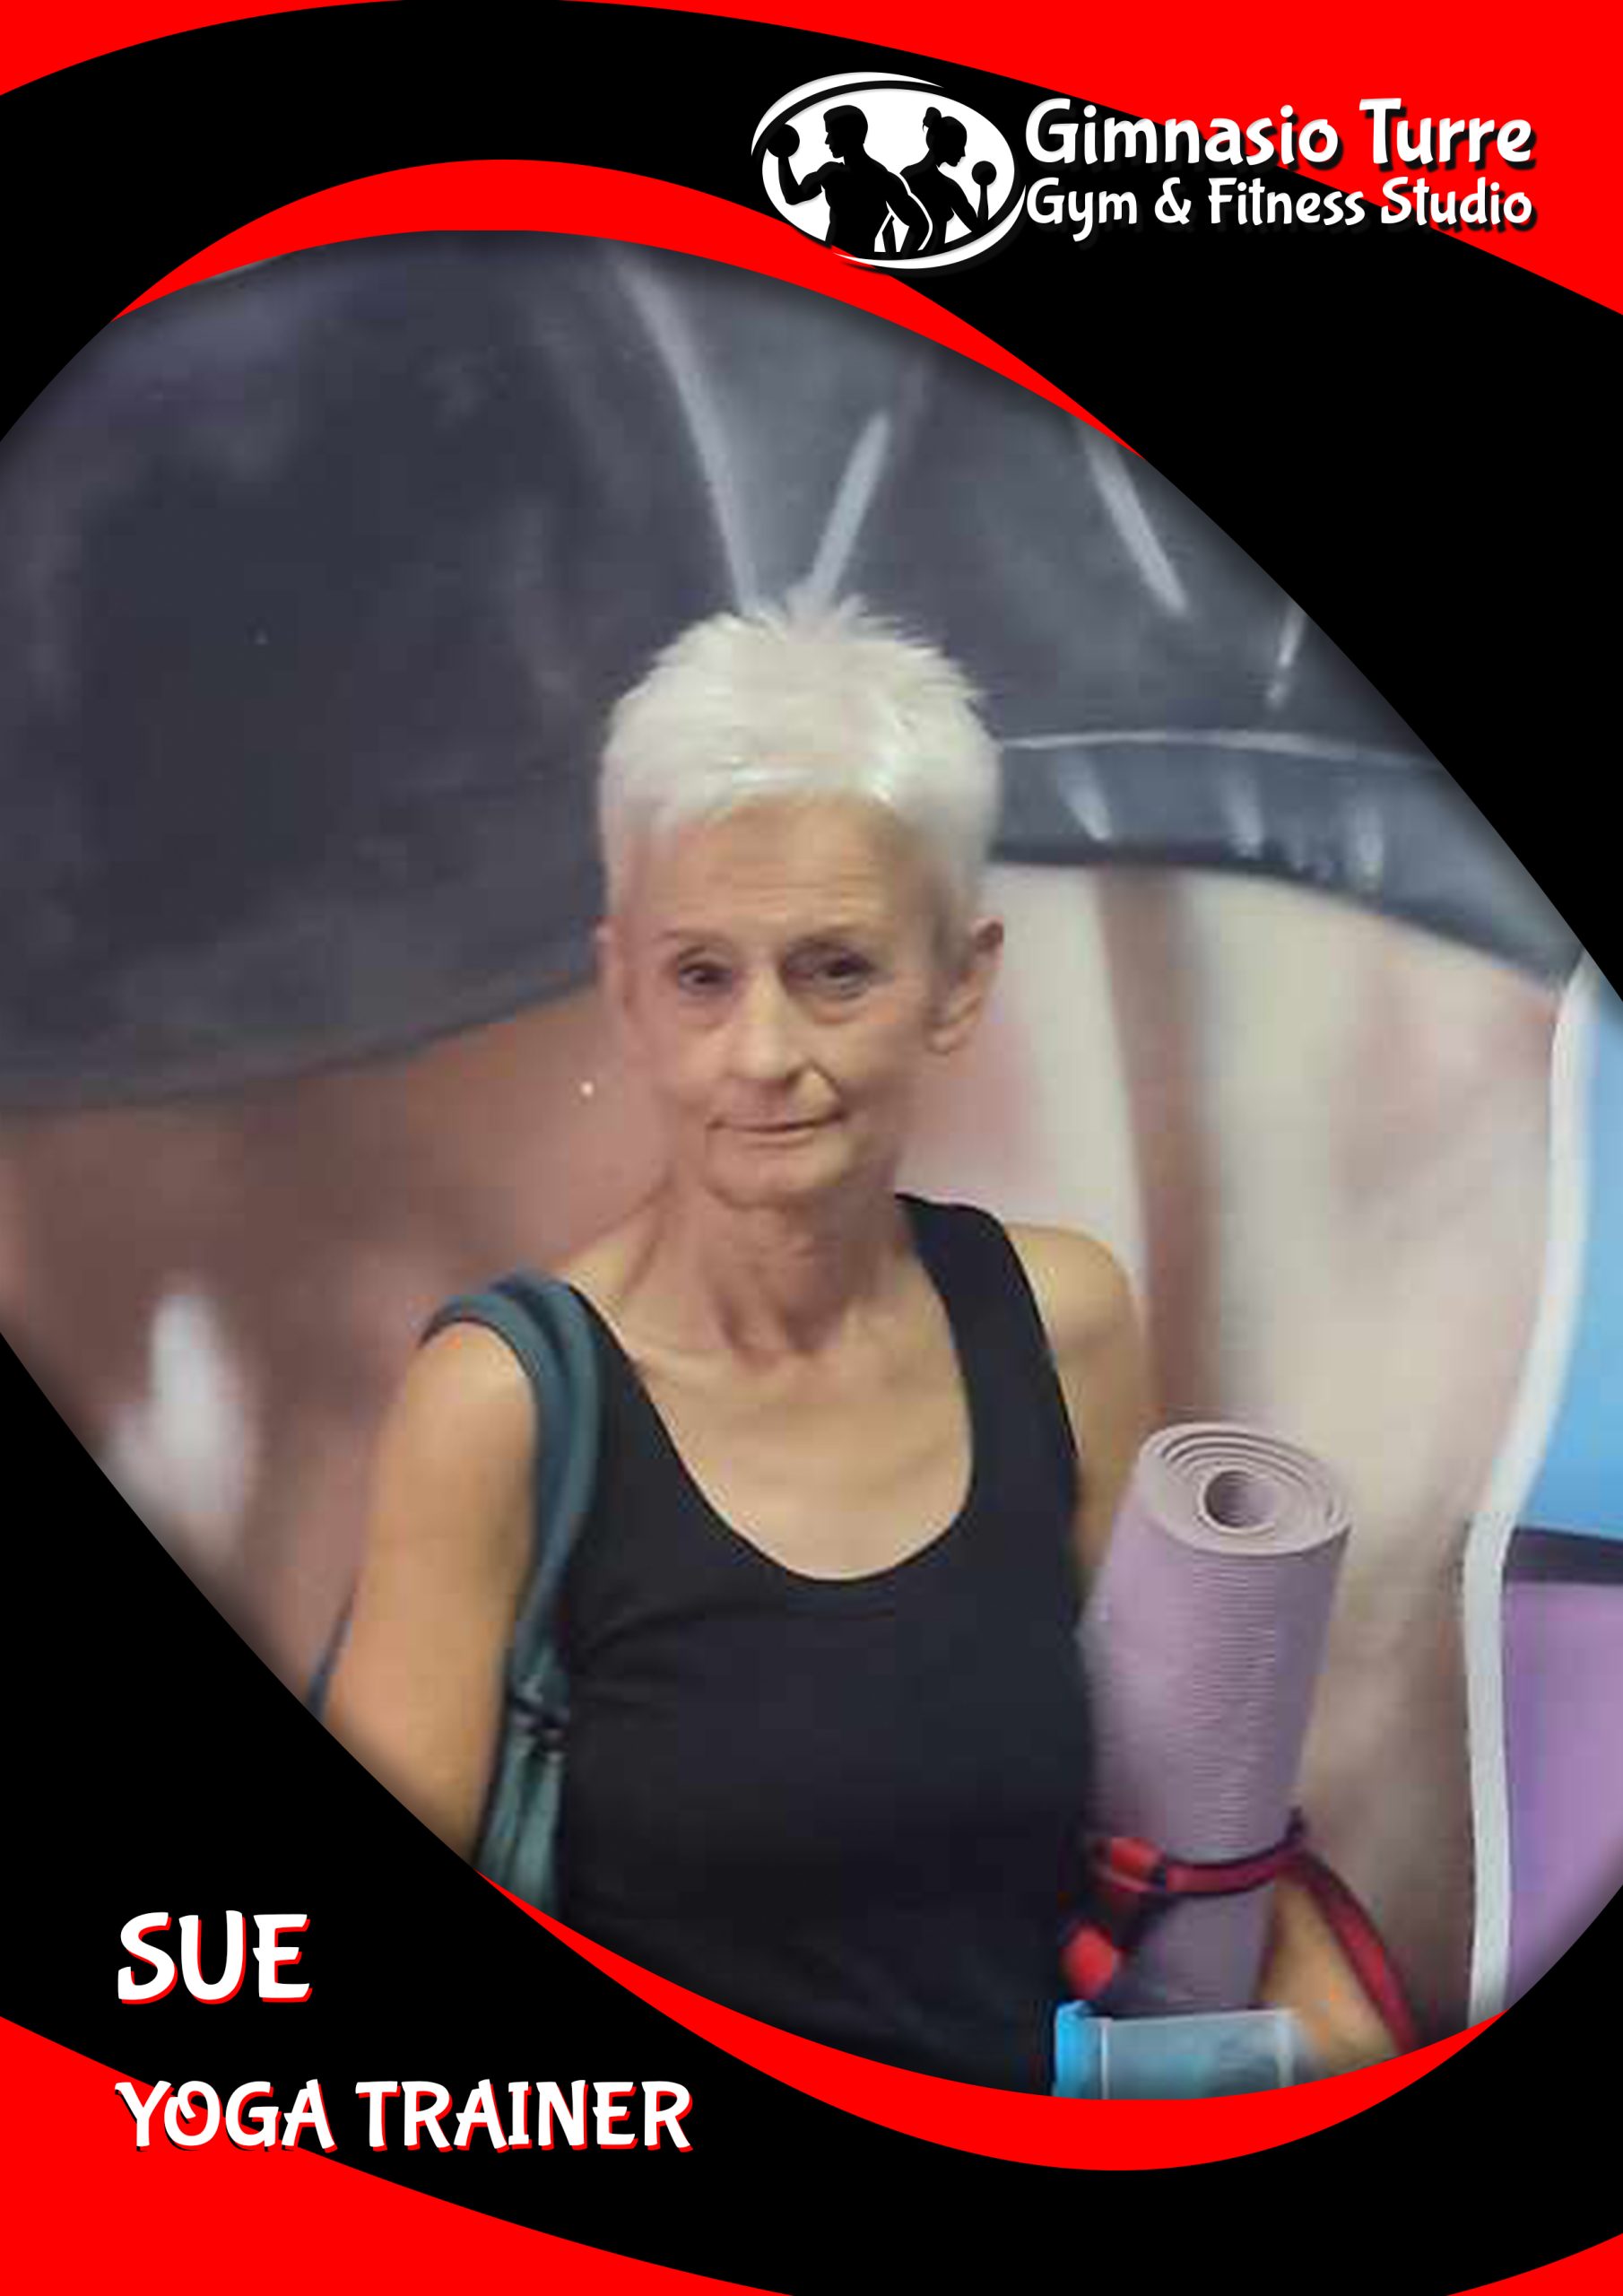 Sue